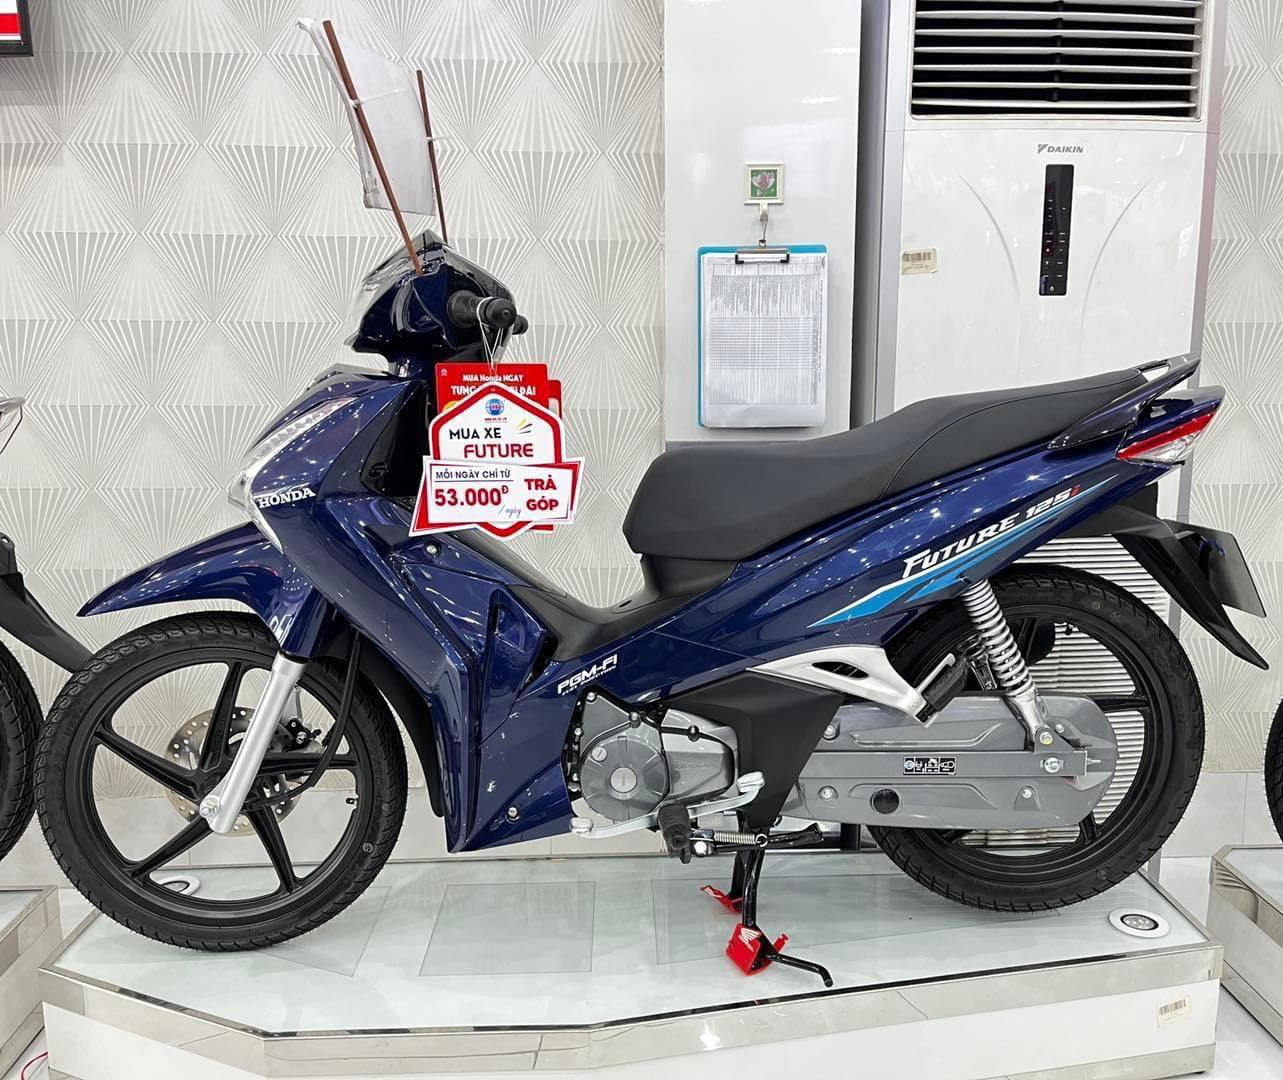 Bảng giá xe máy Honda Future mới nhất ngày 10102022 Quay đầu đội giá